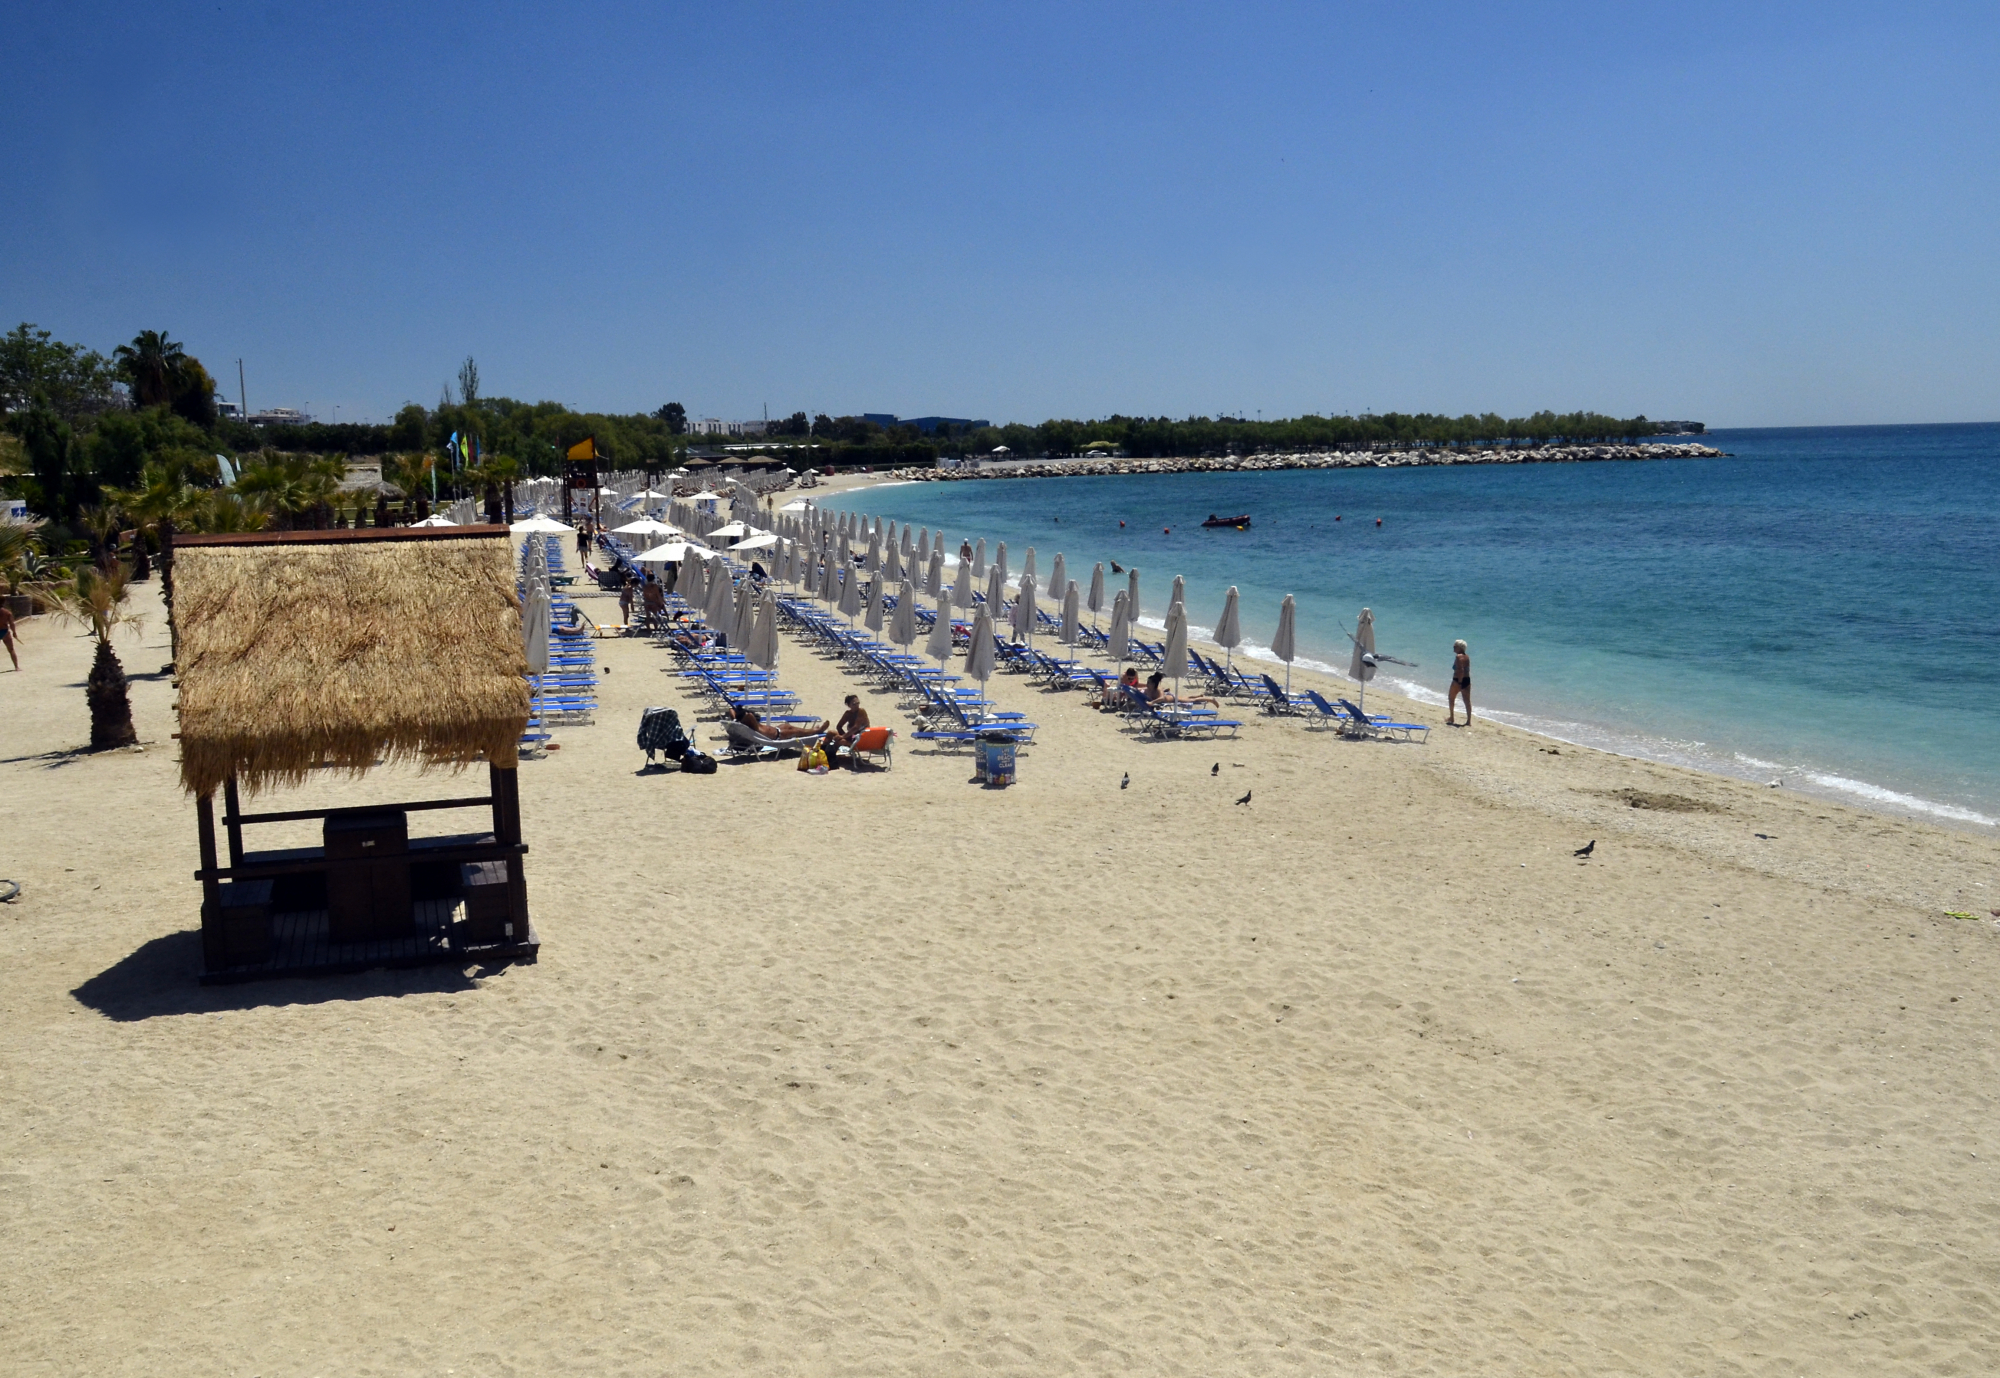 Παραλίες: Ένας μισθός για κολύμπι σε πλαζ της Αττικής